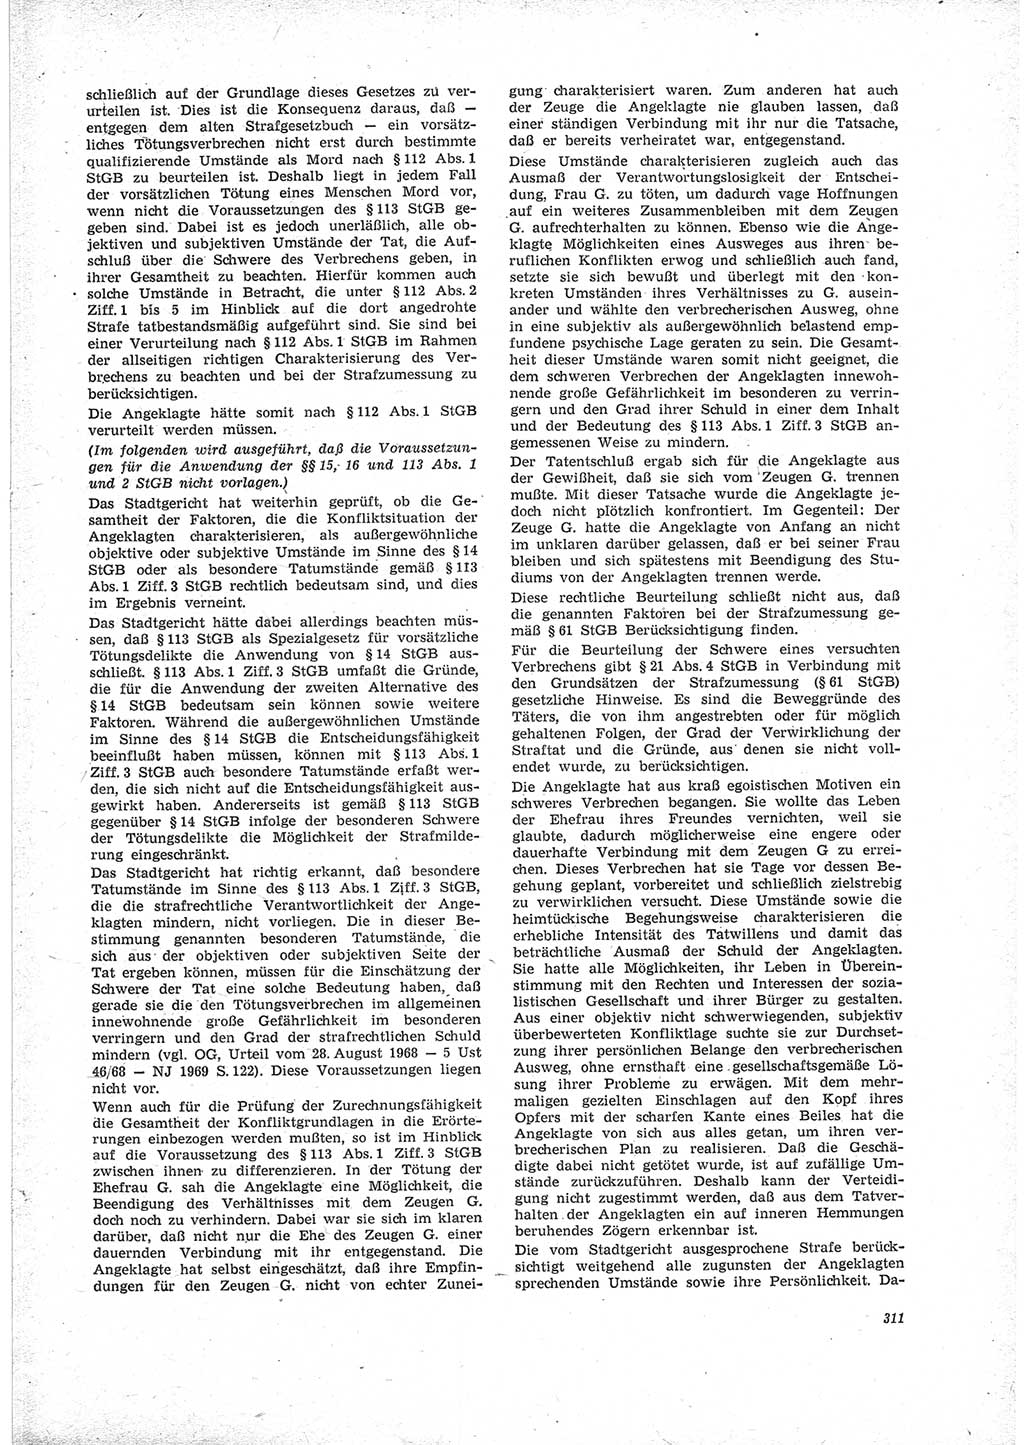 Neue Justiz (NJ), Zeitschrift für Recht und Rechtswissenschaft [Deutsche Demokratische Republik (DDR)], 23. Jahrgang 1969, Seite 311 (NJ DDR 1969, S. 311)